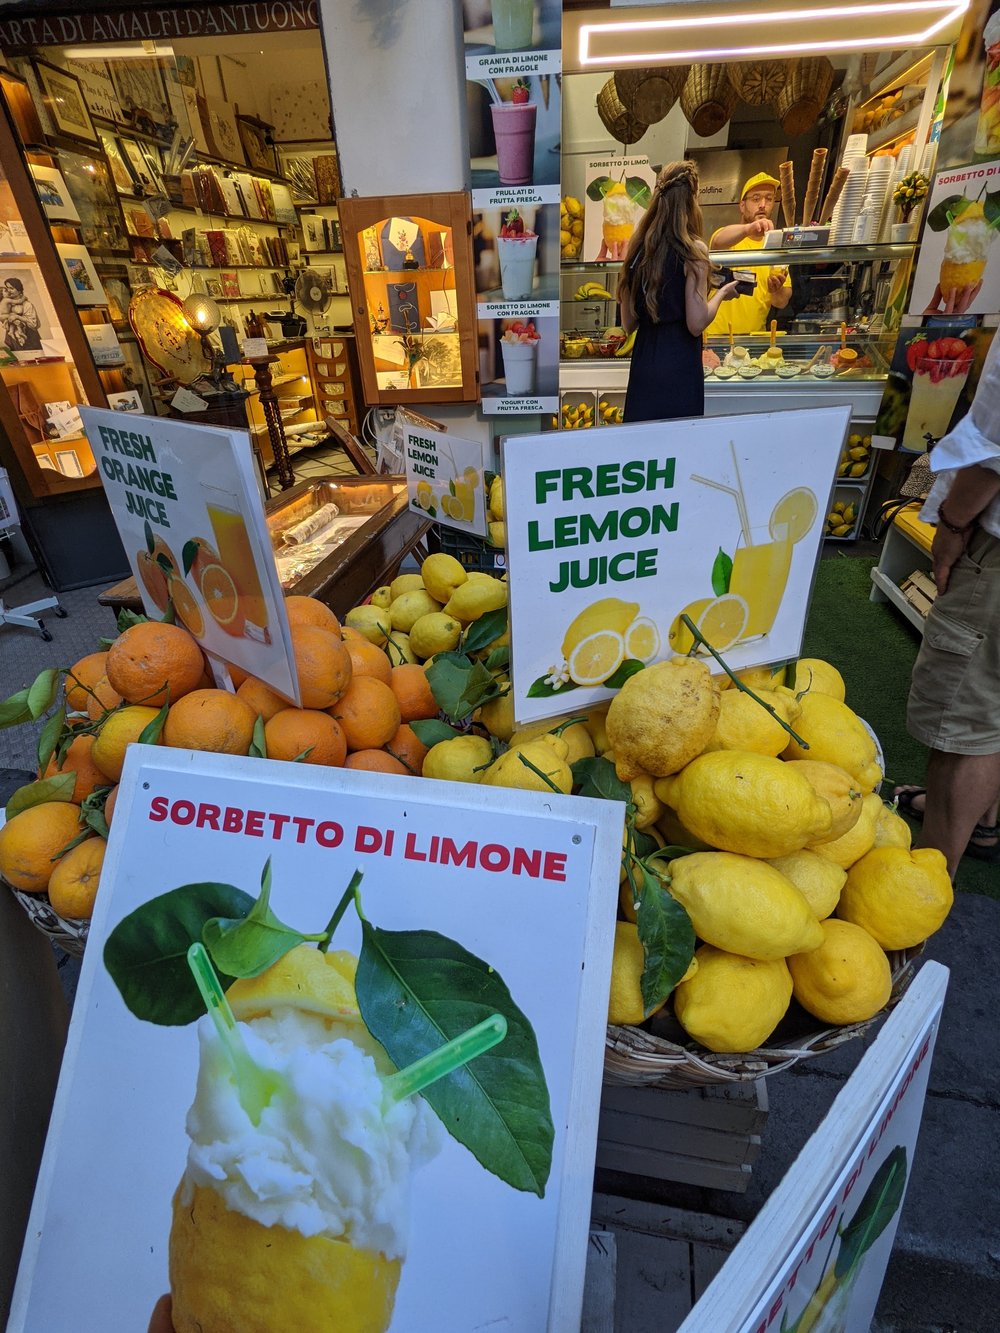 Lemons are an Amalfi Thing